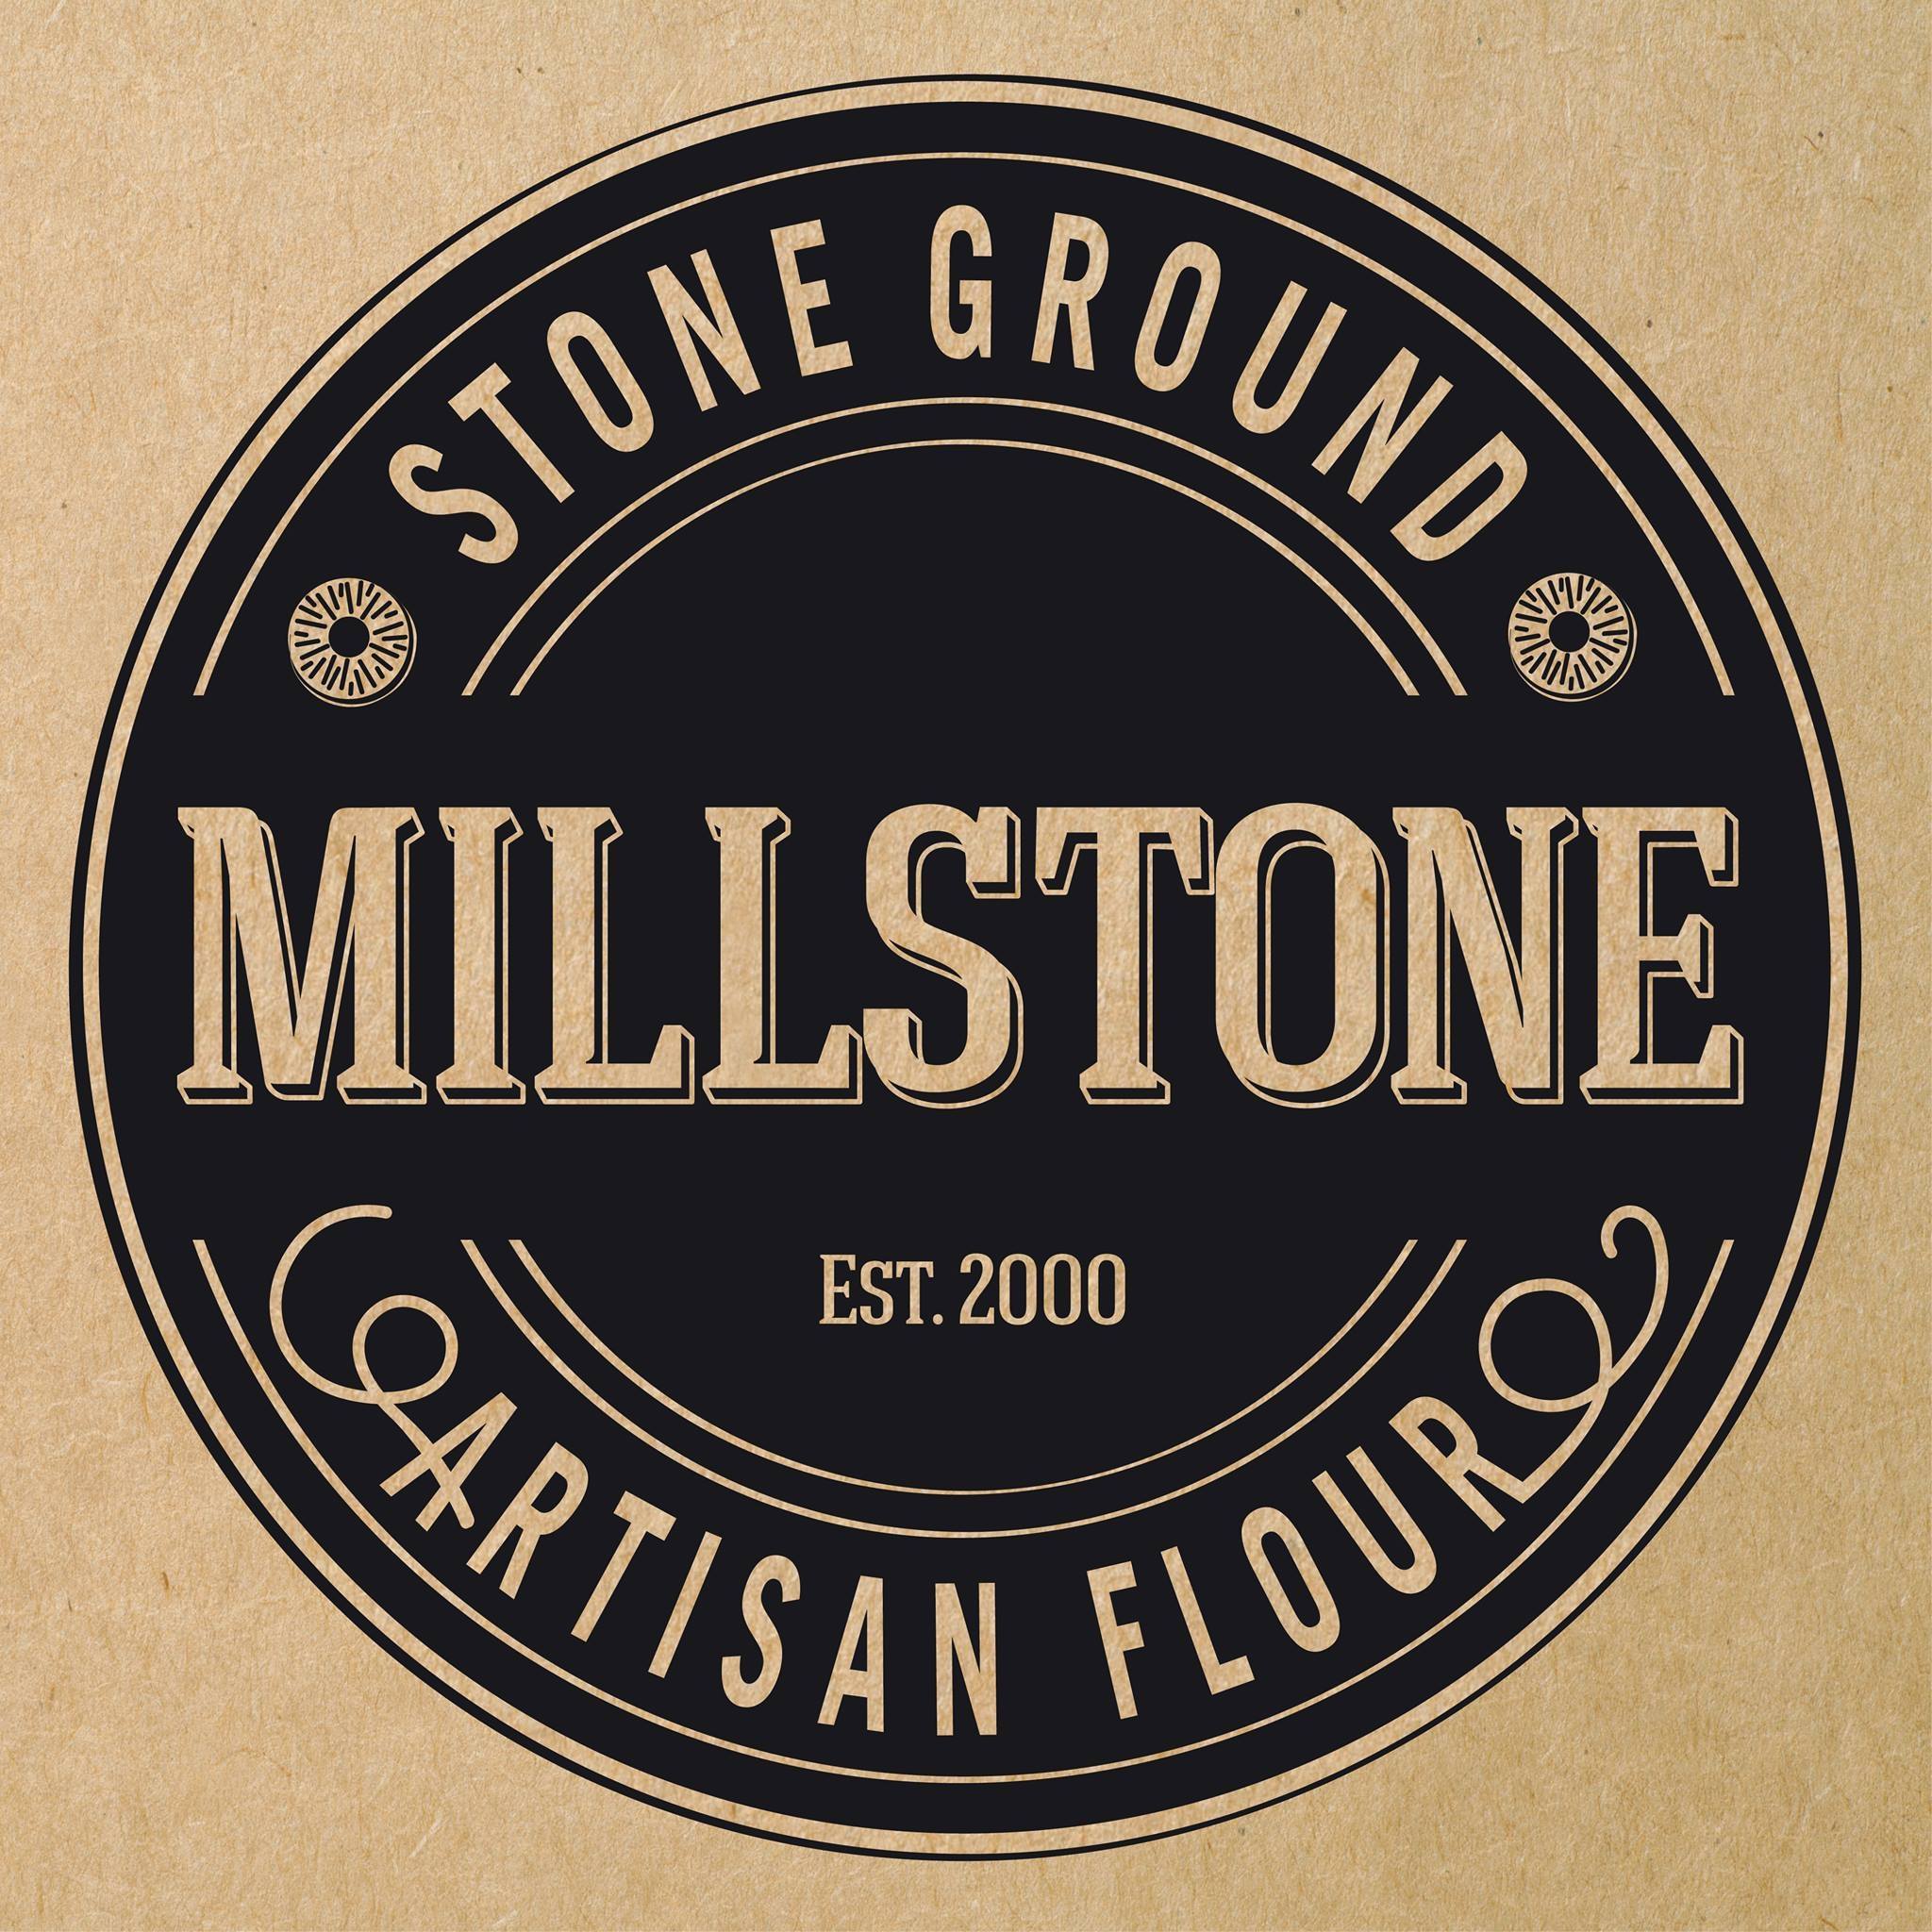 Millstone Flour